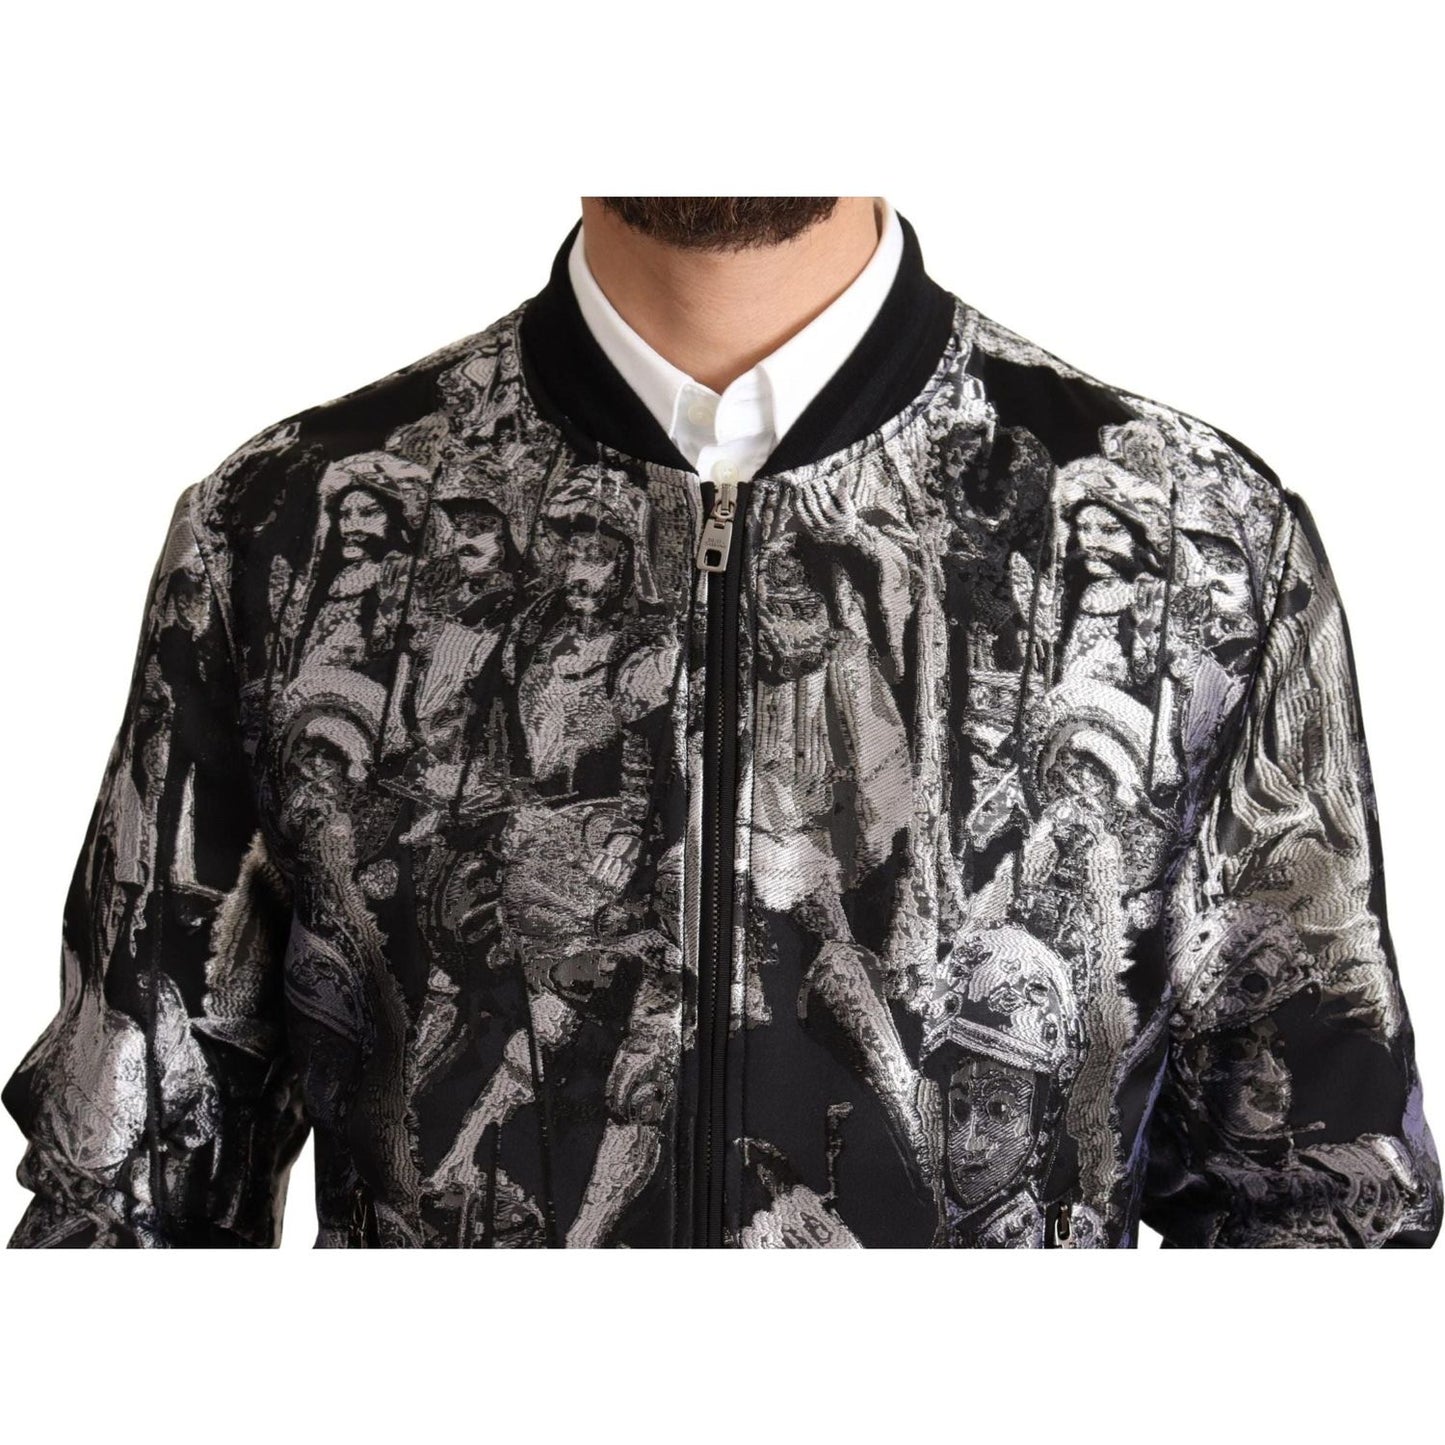 Dolce & Gabbana Elegant Black Bomber Jacket with Silver Details black-silver-puppi-motive-bomber-jacket